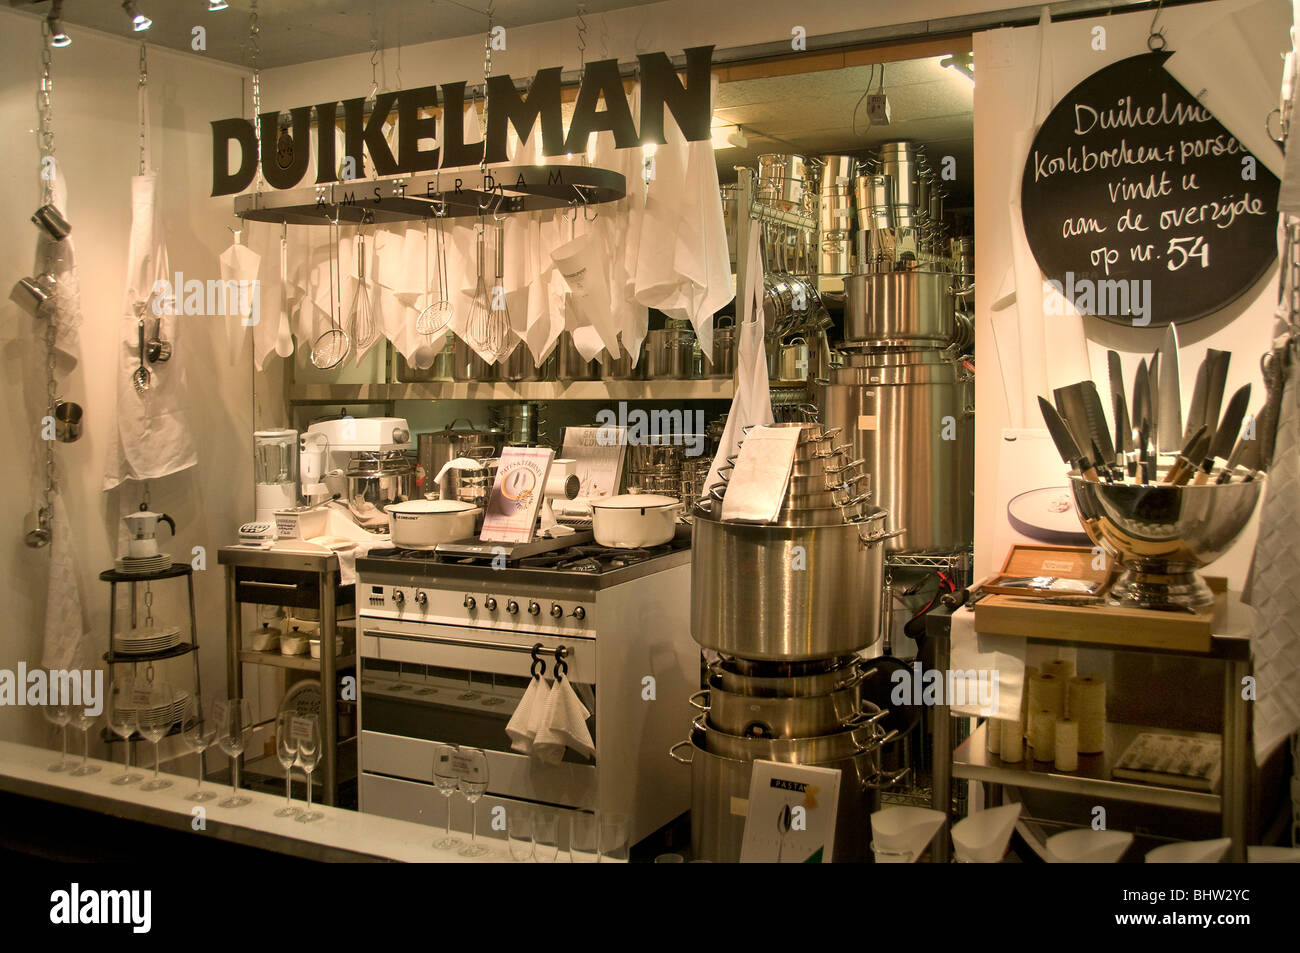 Duikelman Amsterdam ustensiles de cuisine Kitchener Banque D'Images